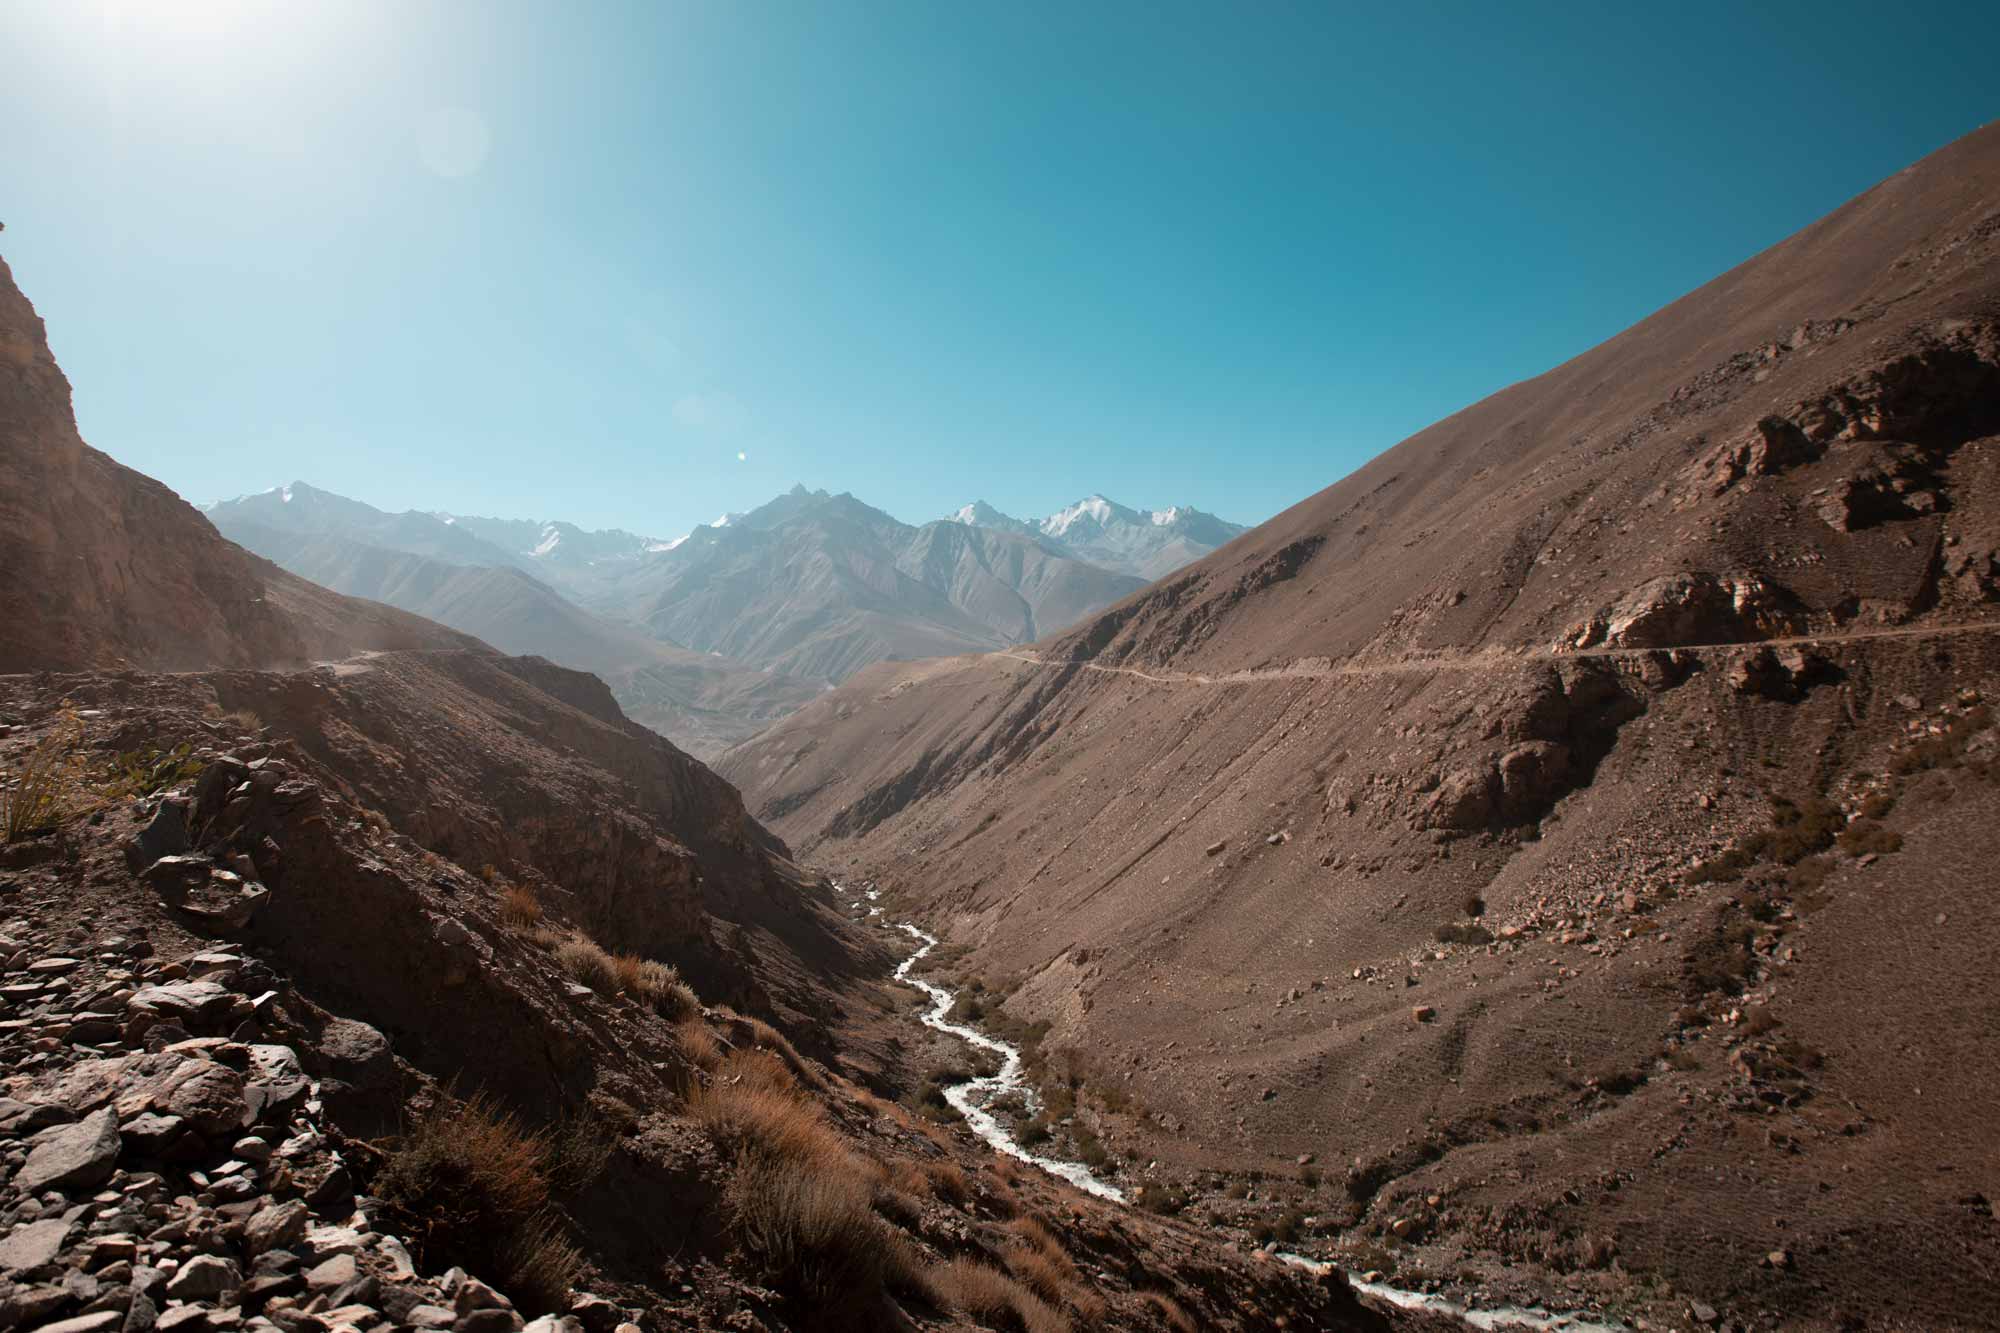 Fotografie di reportage realizzate da Gilberto Maltinti dello studio Parioli Fotografia durante il viaggio in Afghanistan e Tagikistan, nel Corridoio del Whakan. Rito del Buzkashi